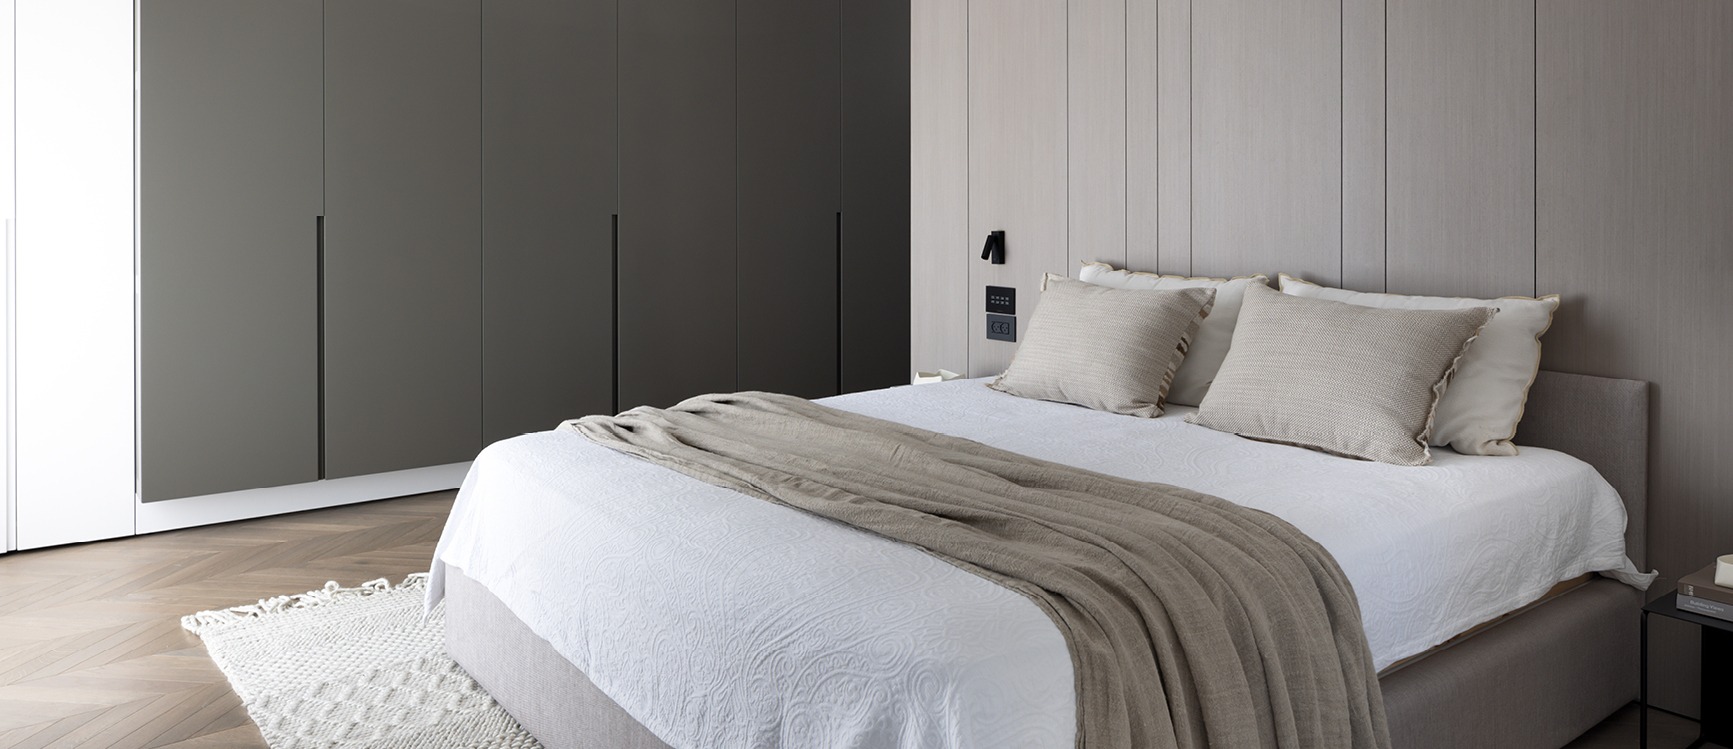 חדר שינה מעוצב שחור בז בהתאמה אישית -נגריית אבן צור